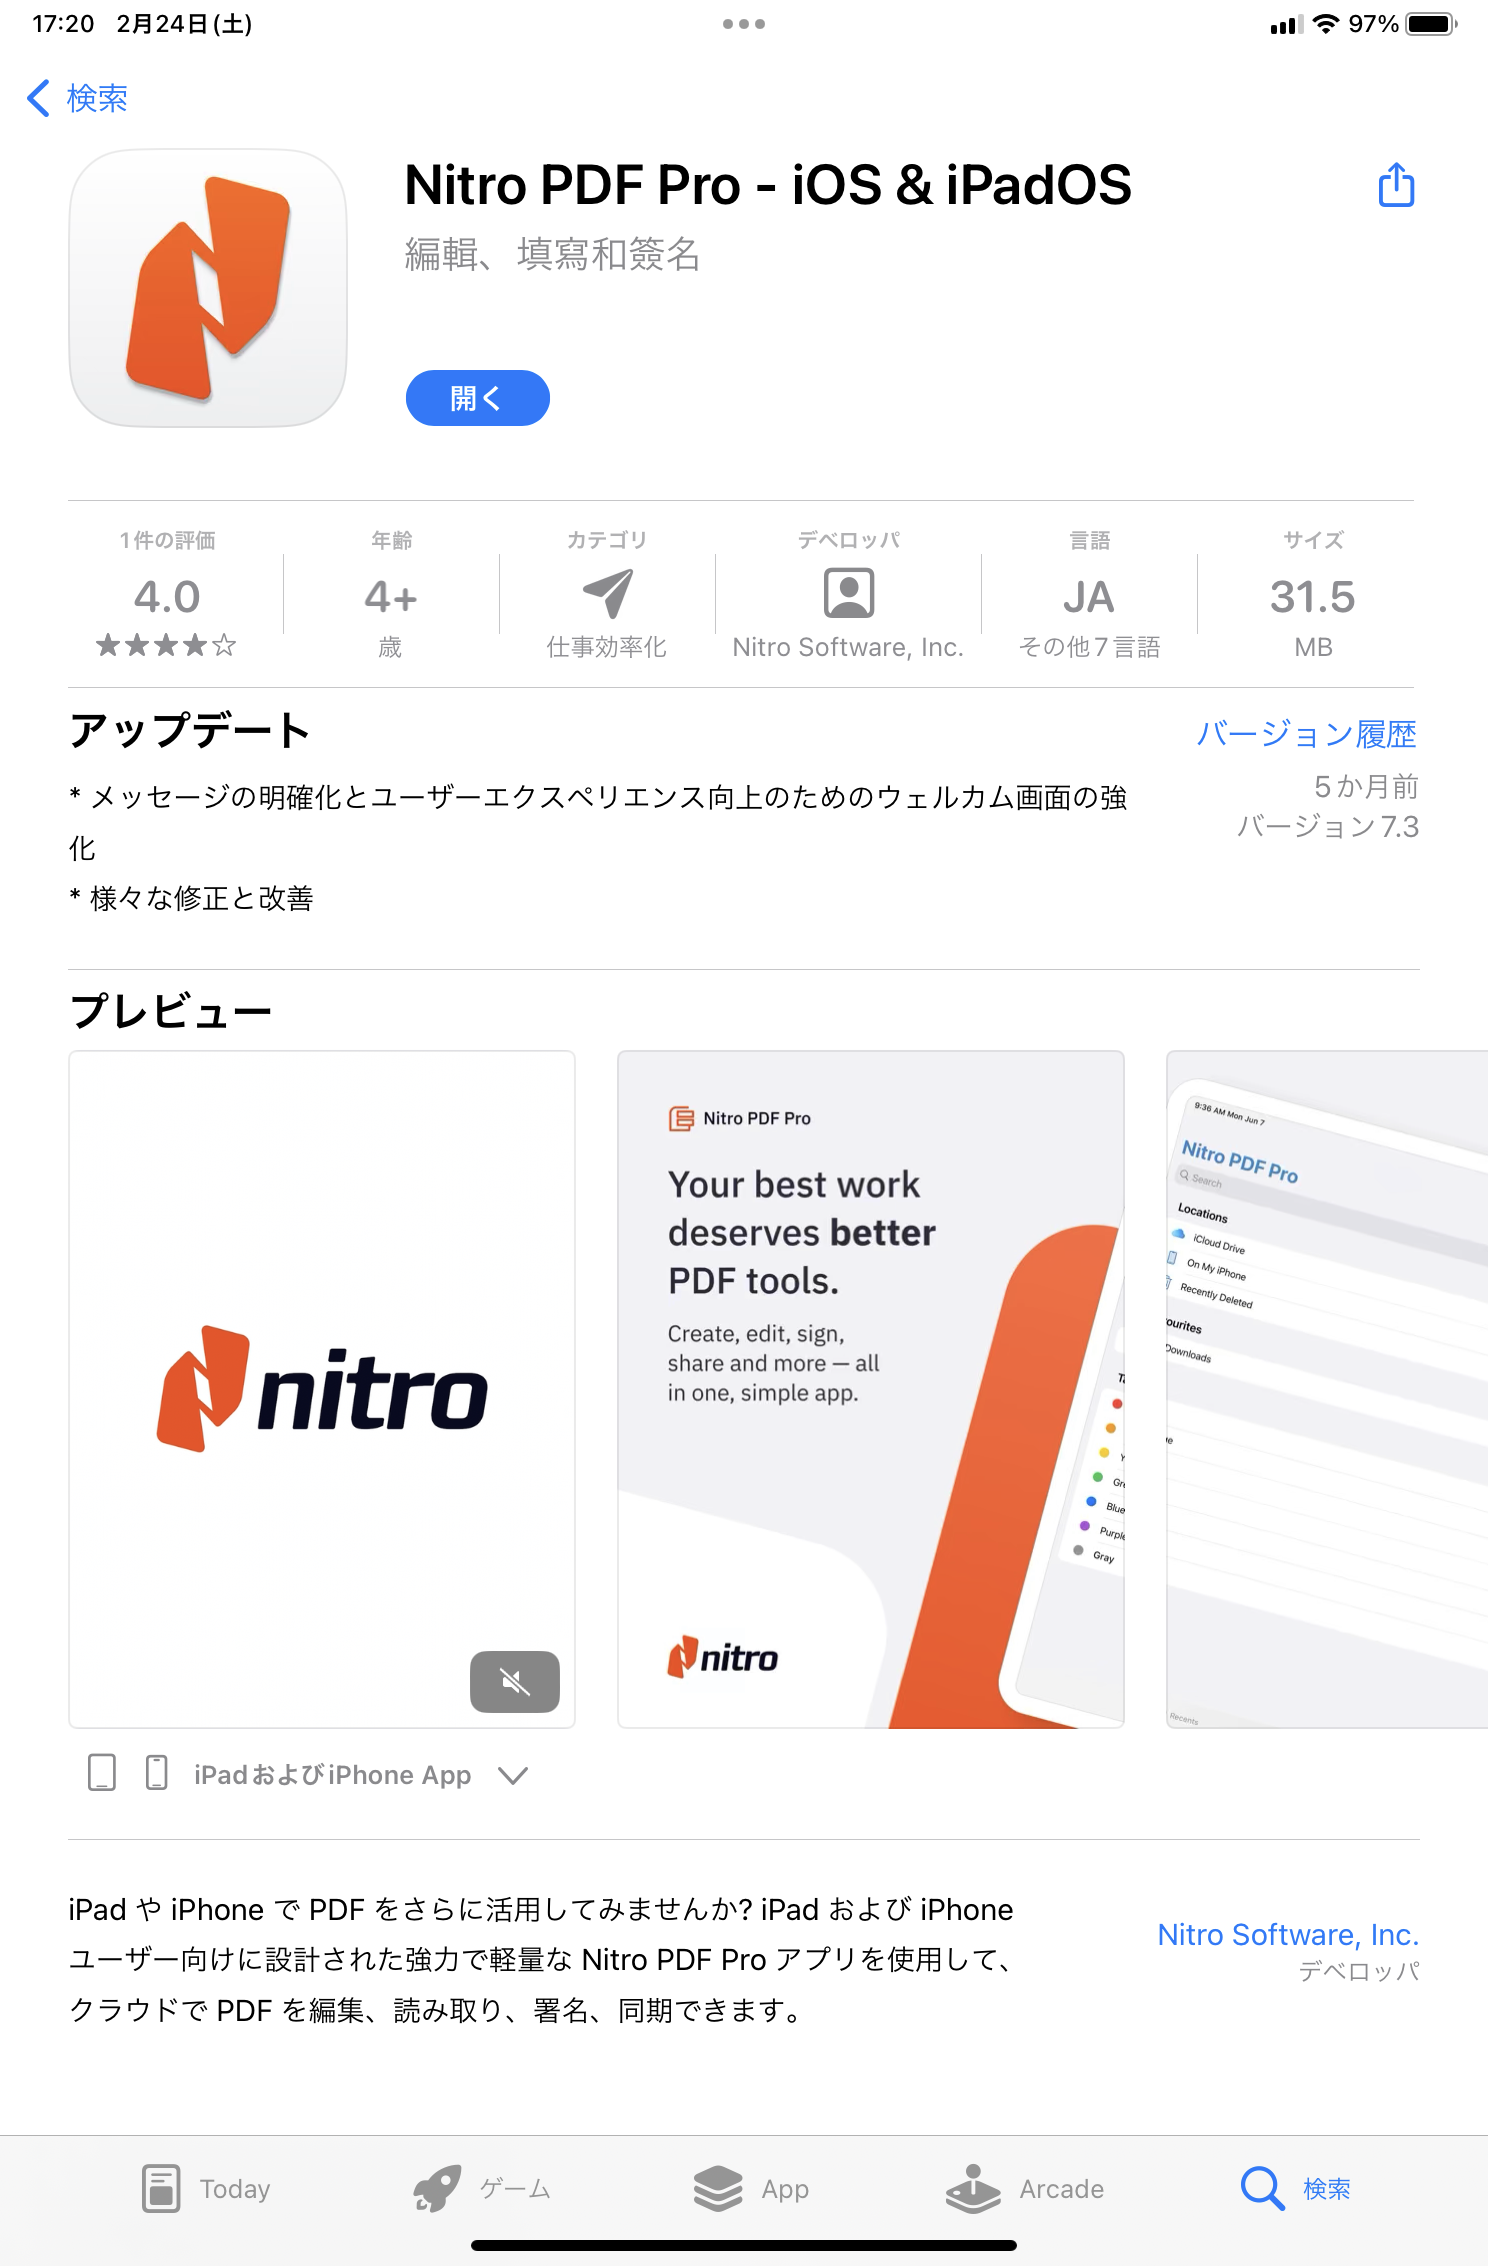 Nitro PDF Pro for iOS ＆ iPadOS